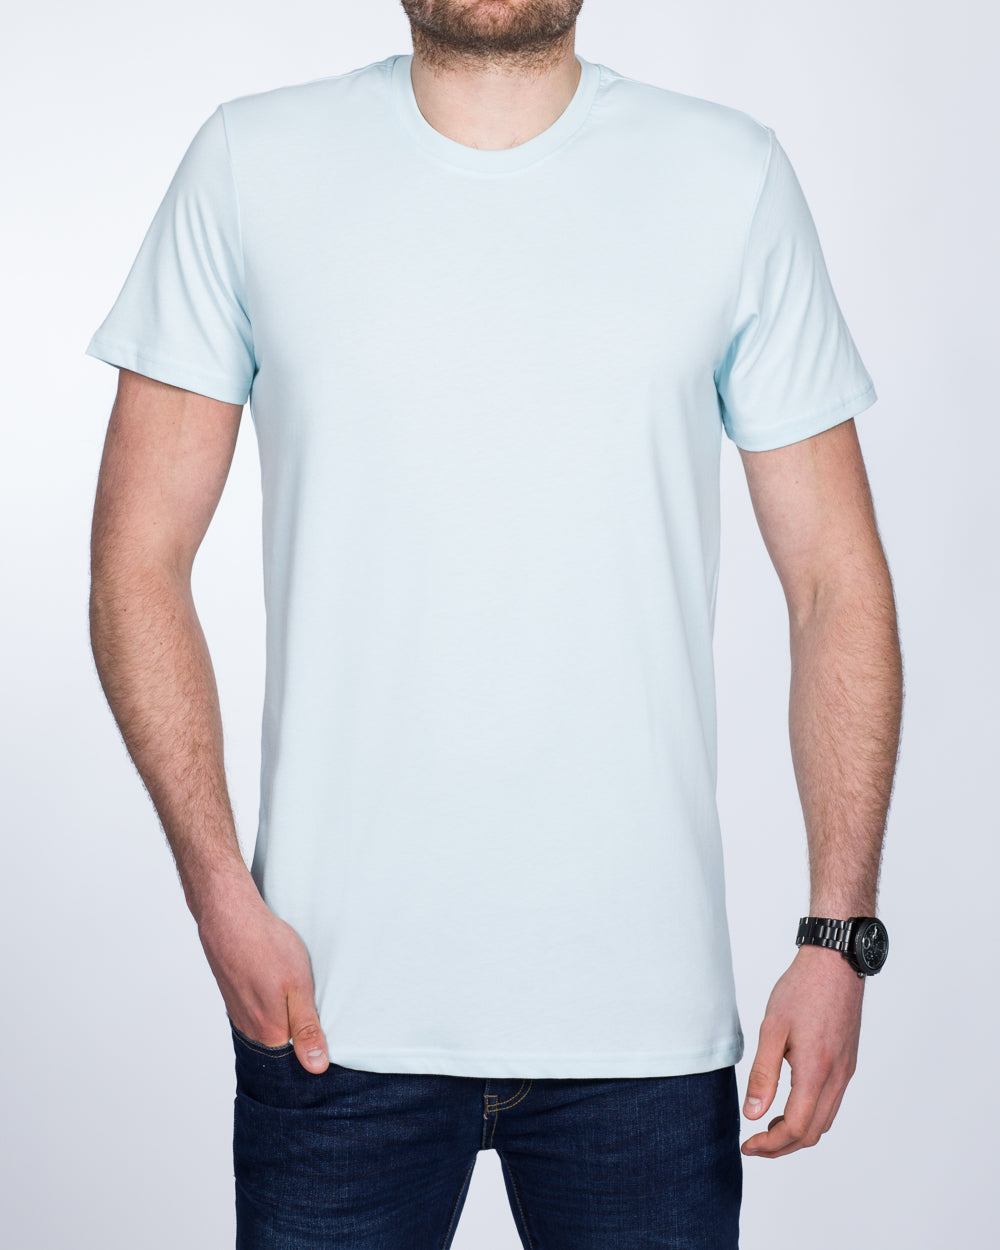 Girav Sydney Extra Tall T-Shirt (light blue)